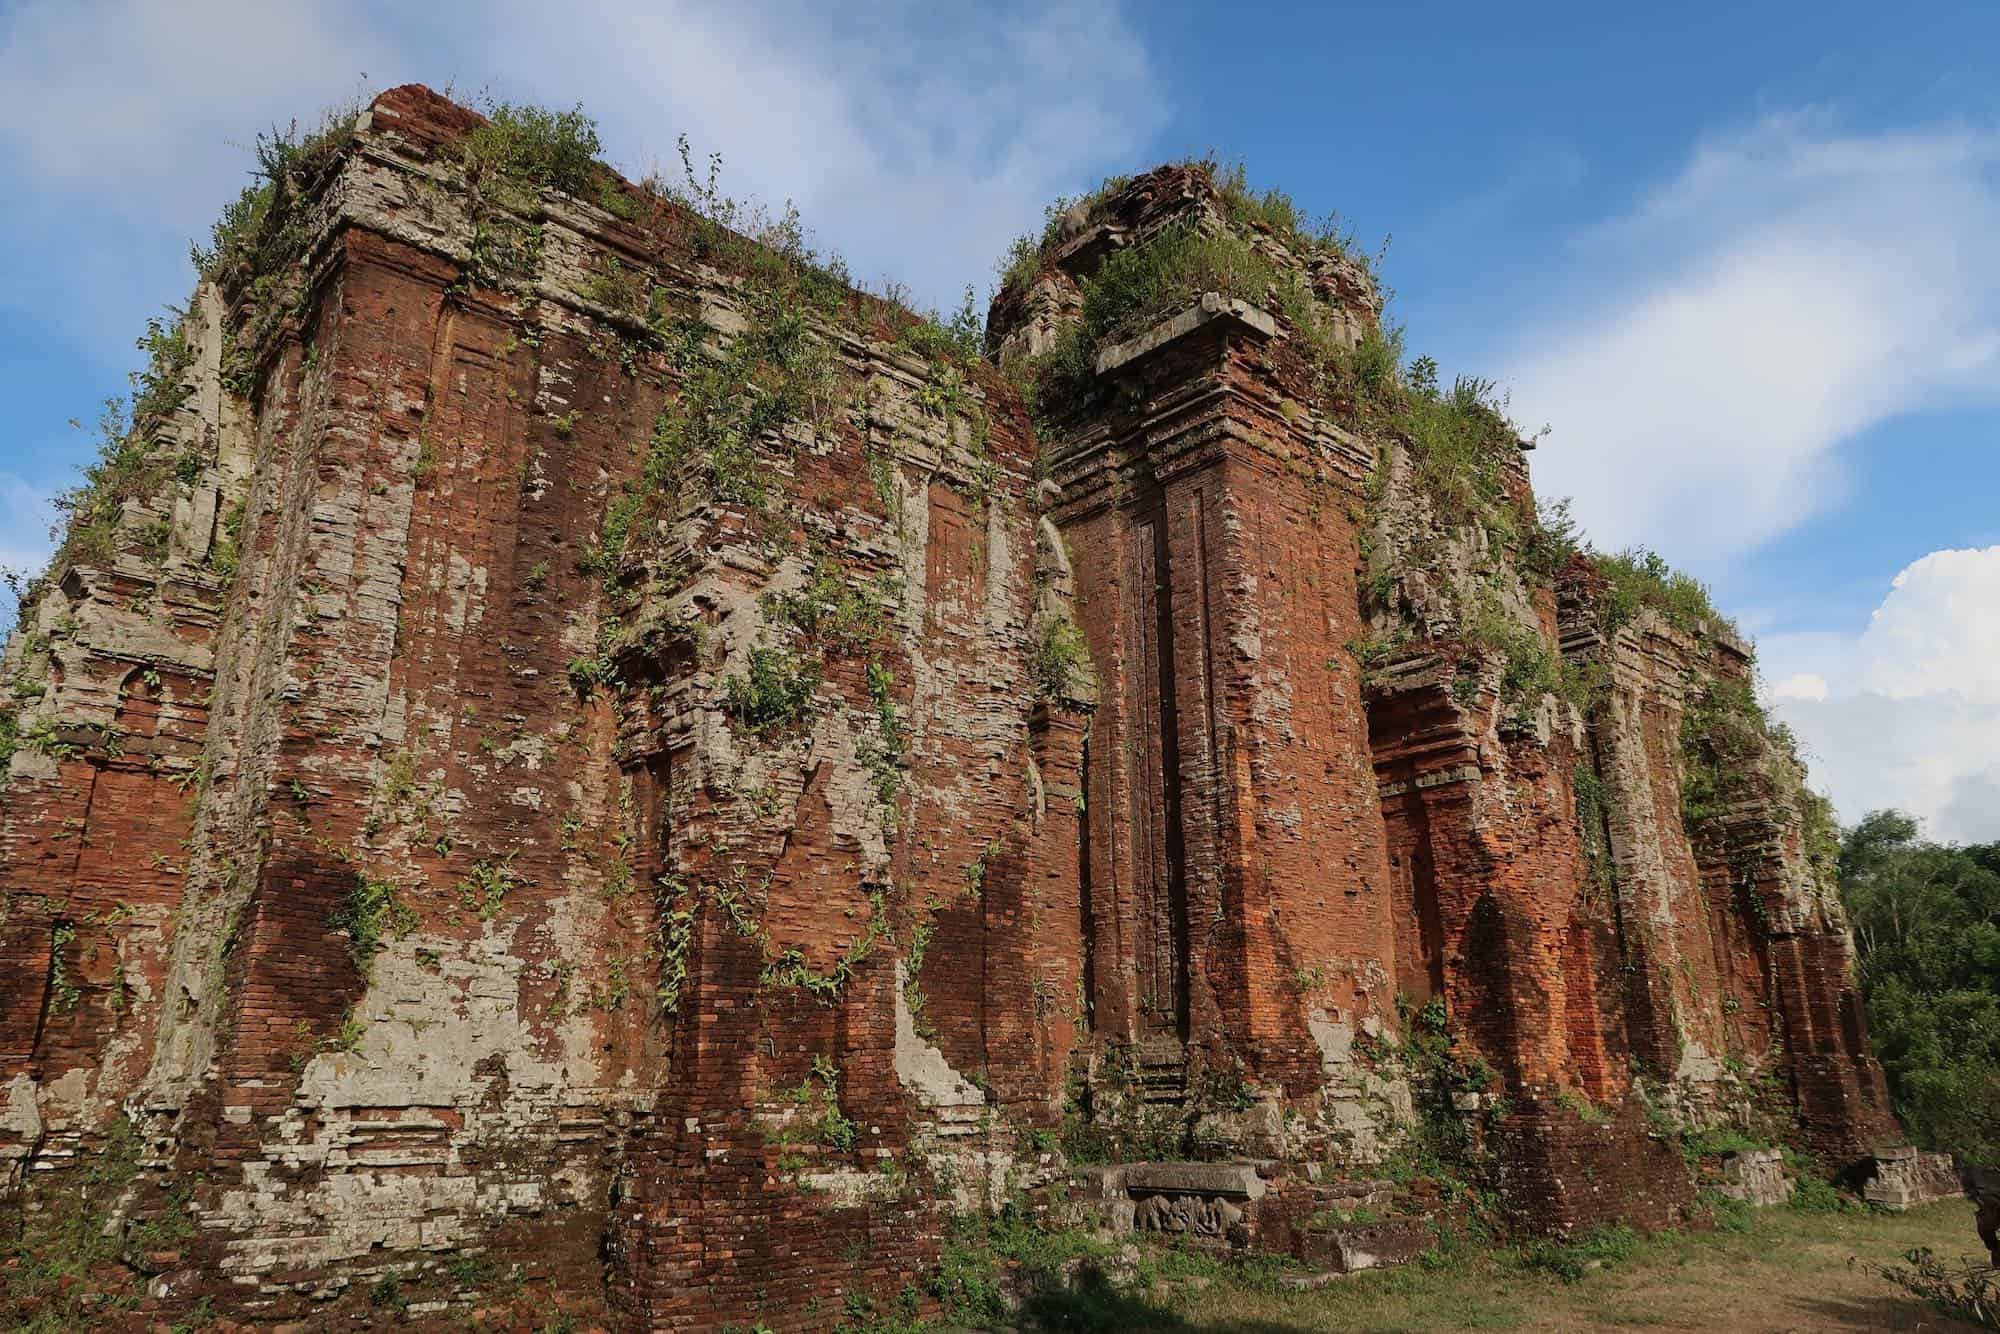 Tháp Chiên Đàn: Quảng Nam’s Ancient Cham Tower Ruins